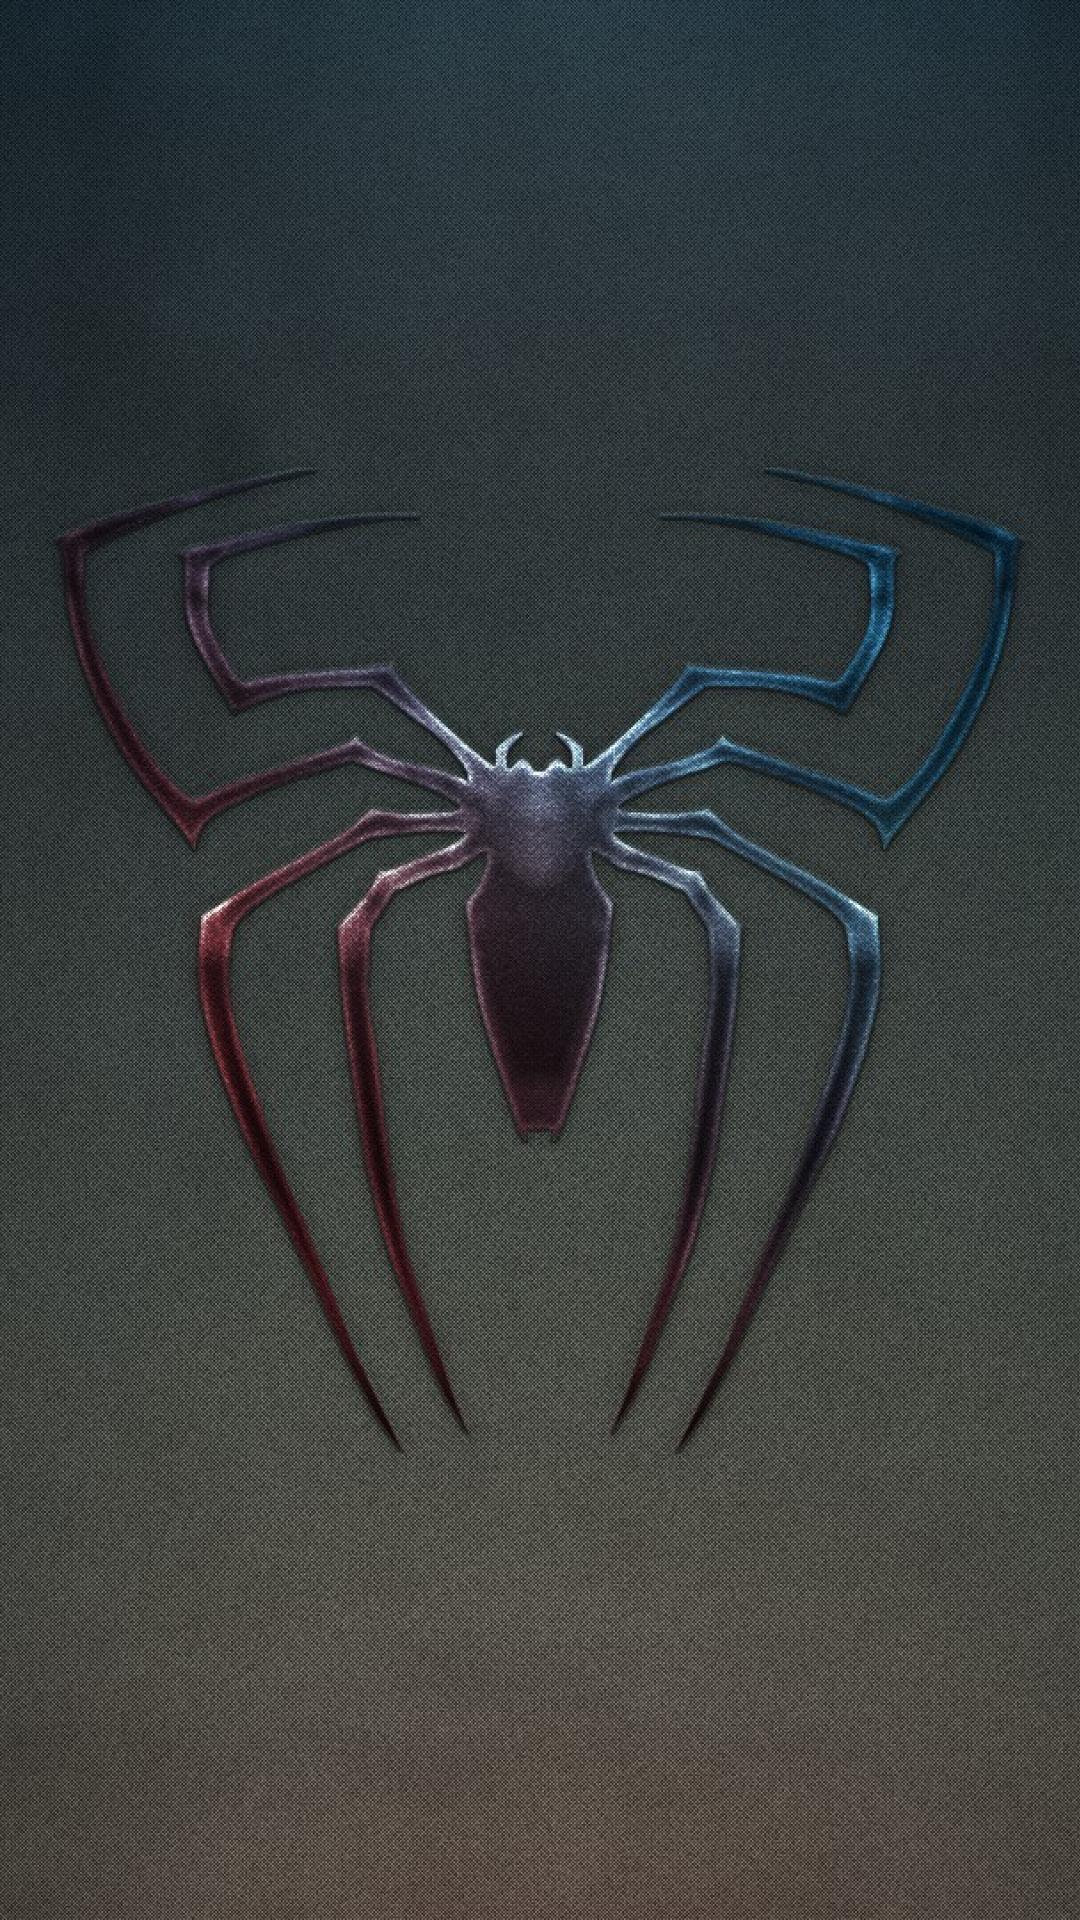 Spider man logo noise grunge background wallpaper 113757